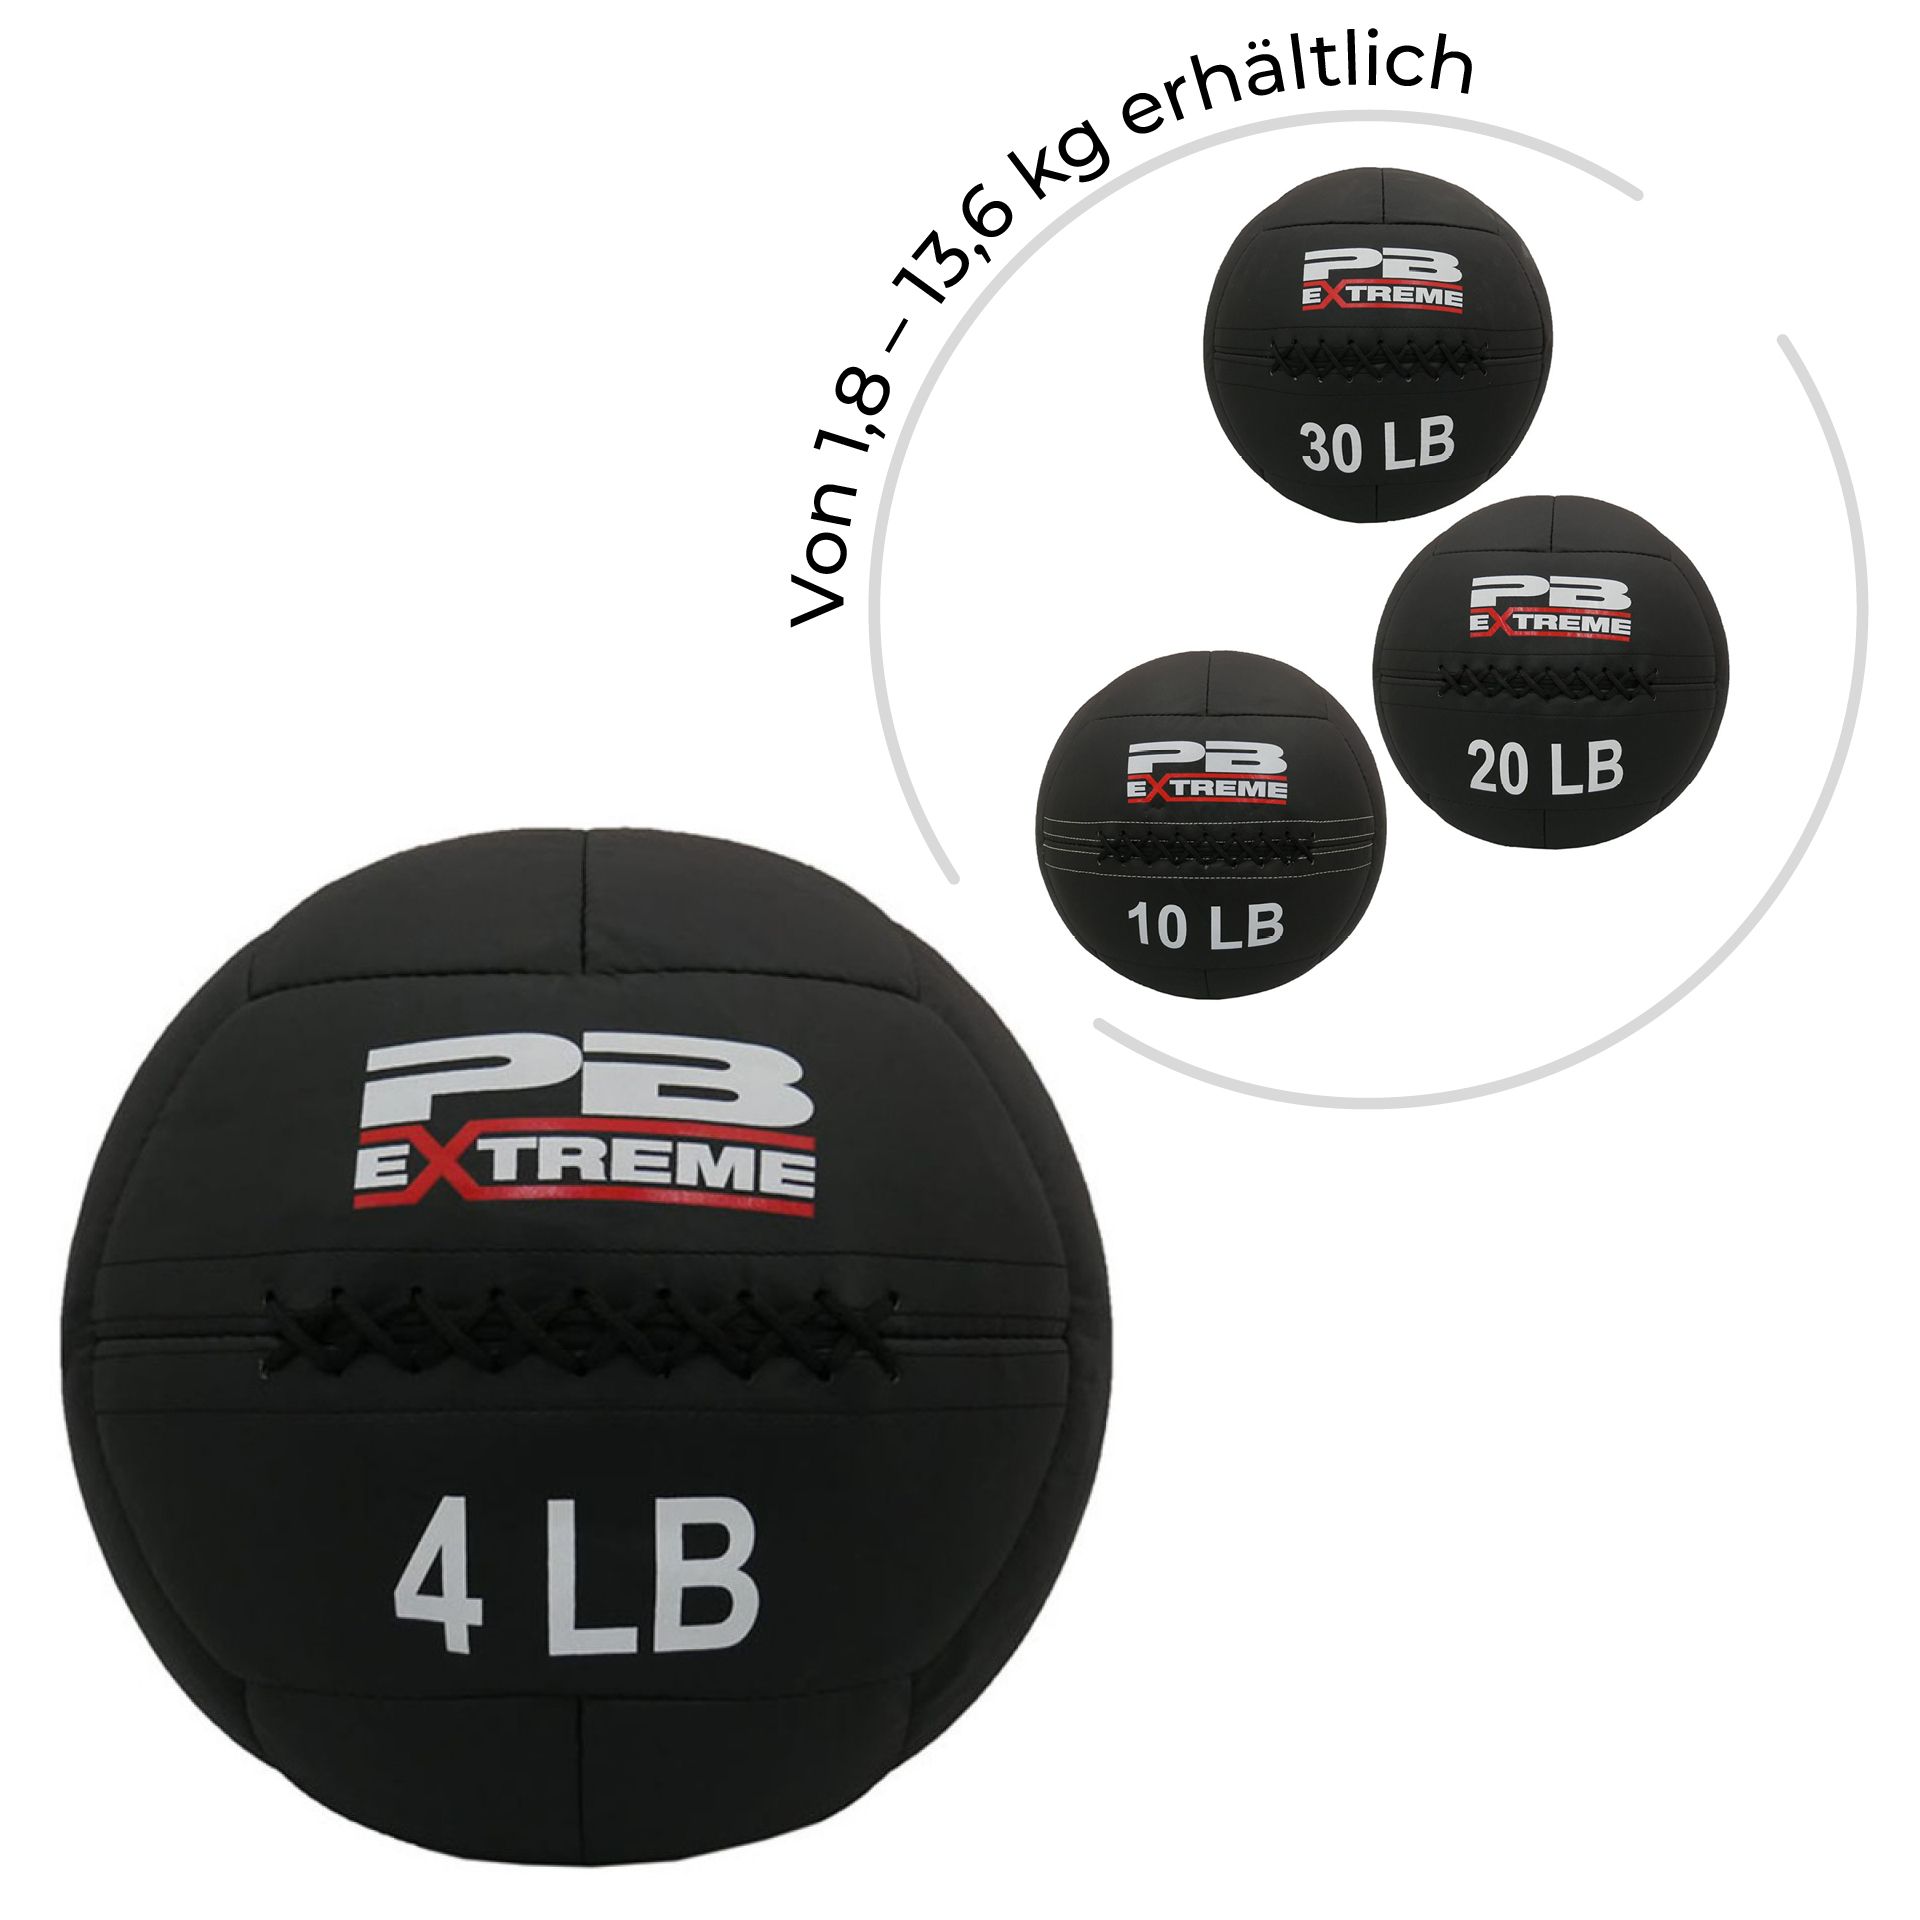 PB Extreme Soft Elite Medizinbälle -schwarz 6 lbs (2,72kg)